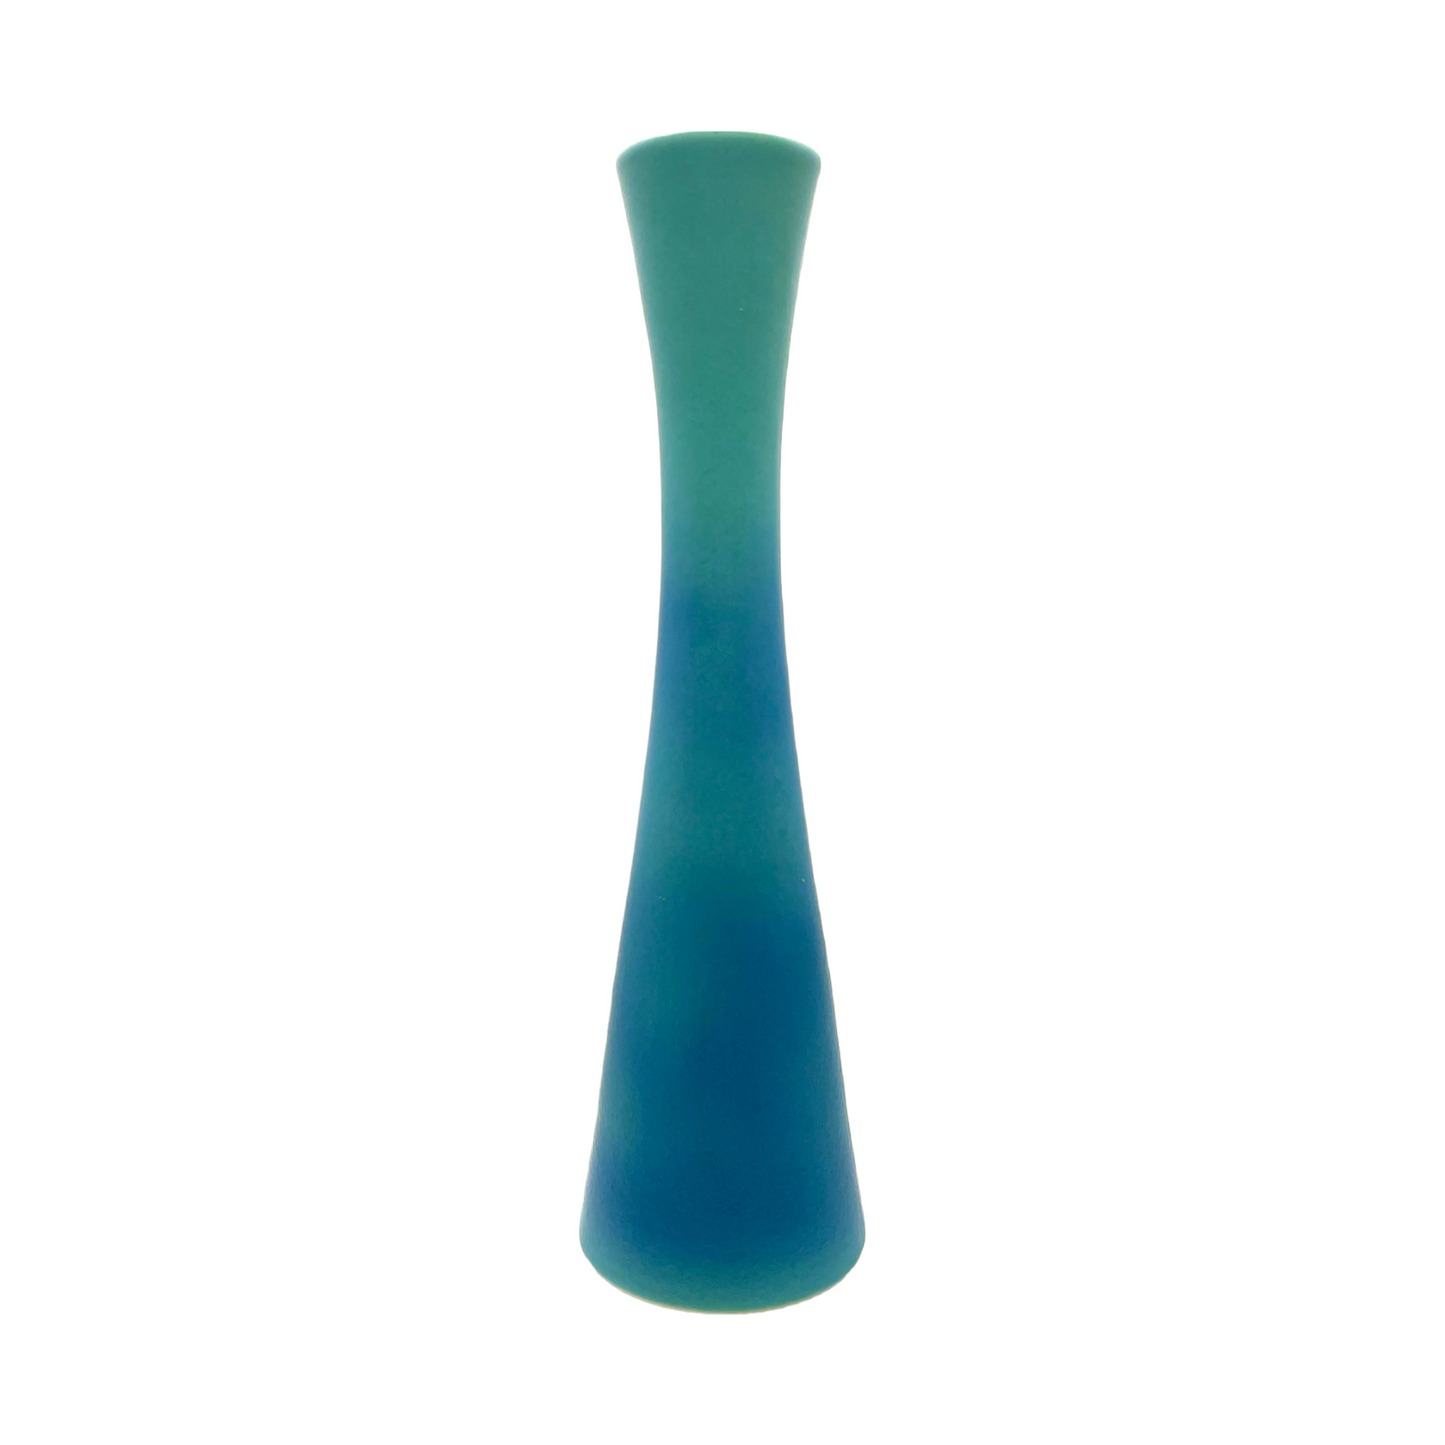 Van Briggle Potter - Ming Blue Corset Vase - Vintage - Mint - 15"